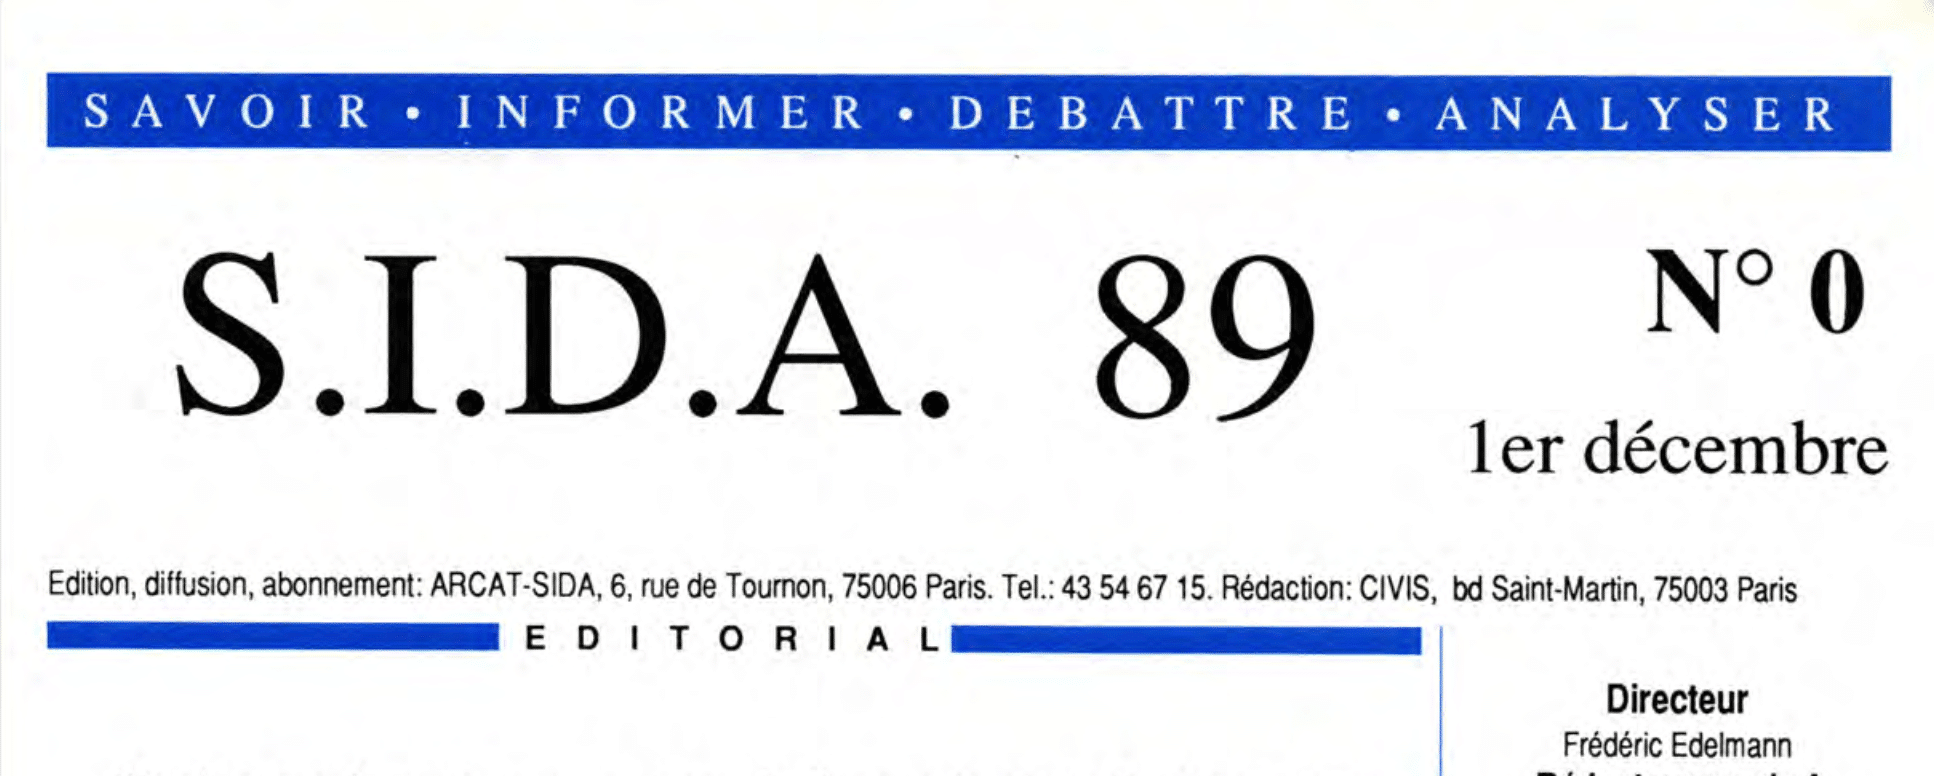 Couverture du n°0 de «S.I.D.A. 89», qui deviendra ensuite le «Journal du Sida»